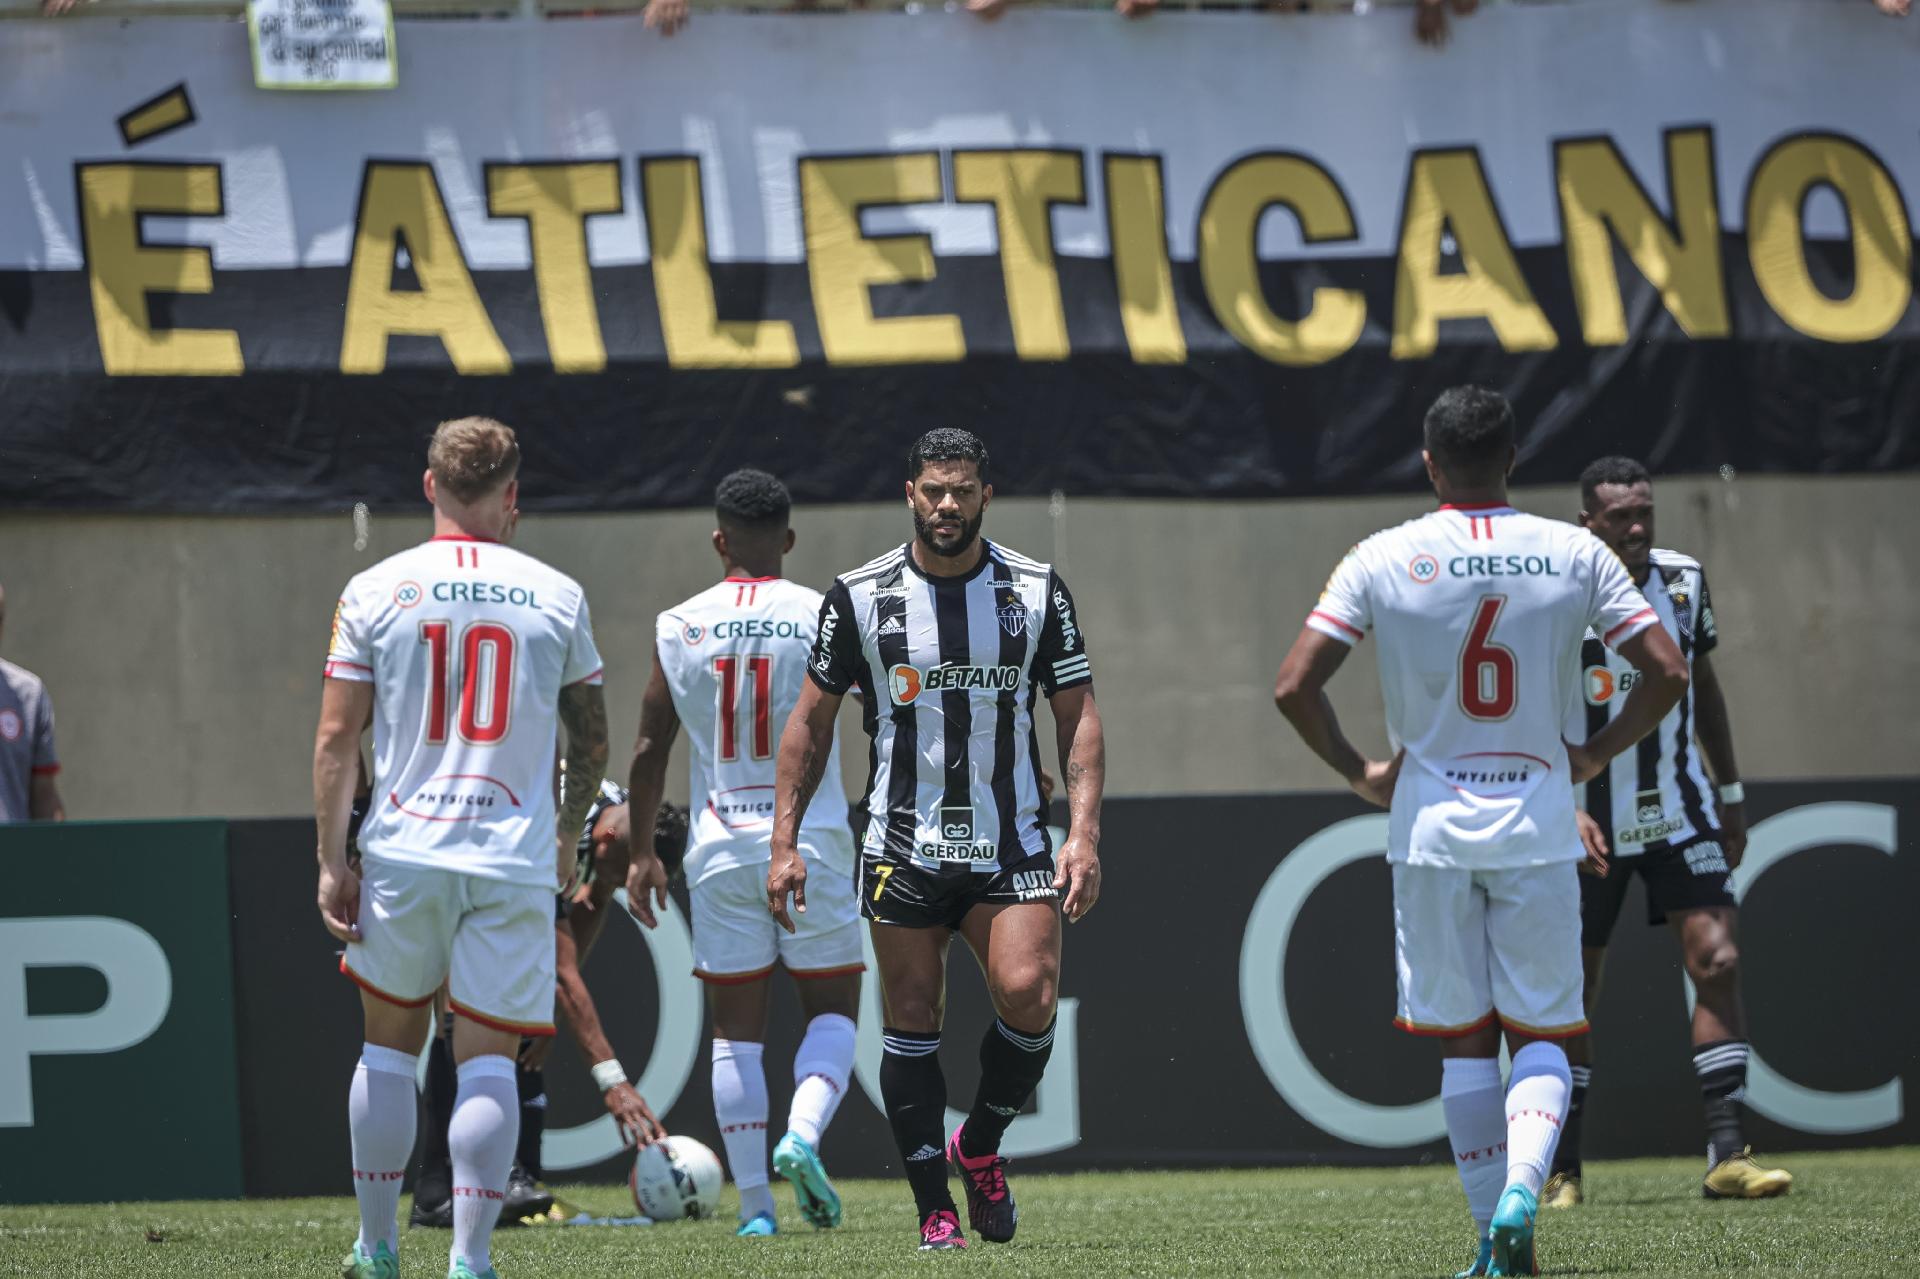 Tombense vs Grêmio: A Clash of David and Goliath in Brazilian Football